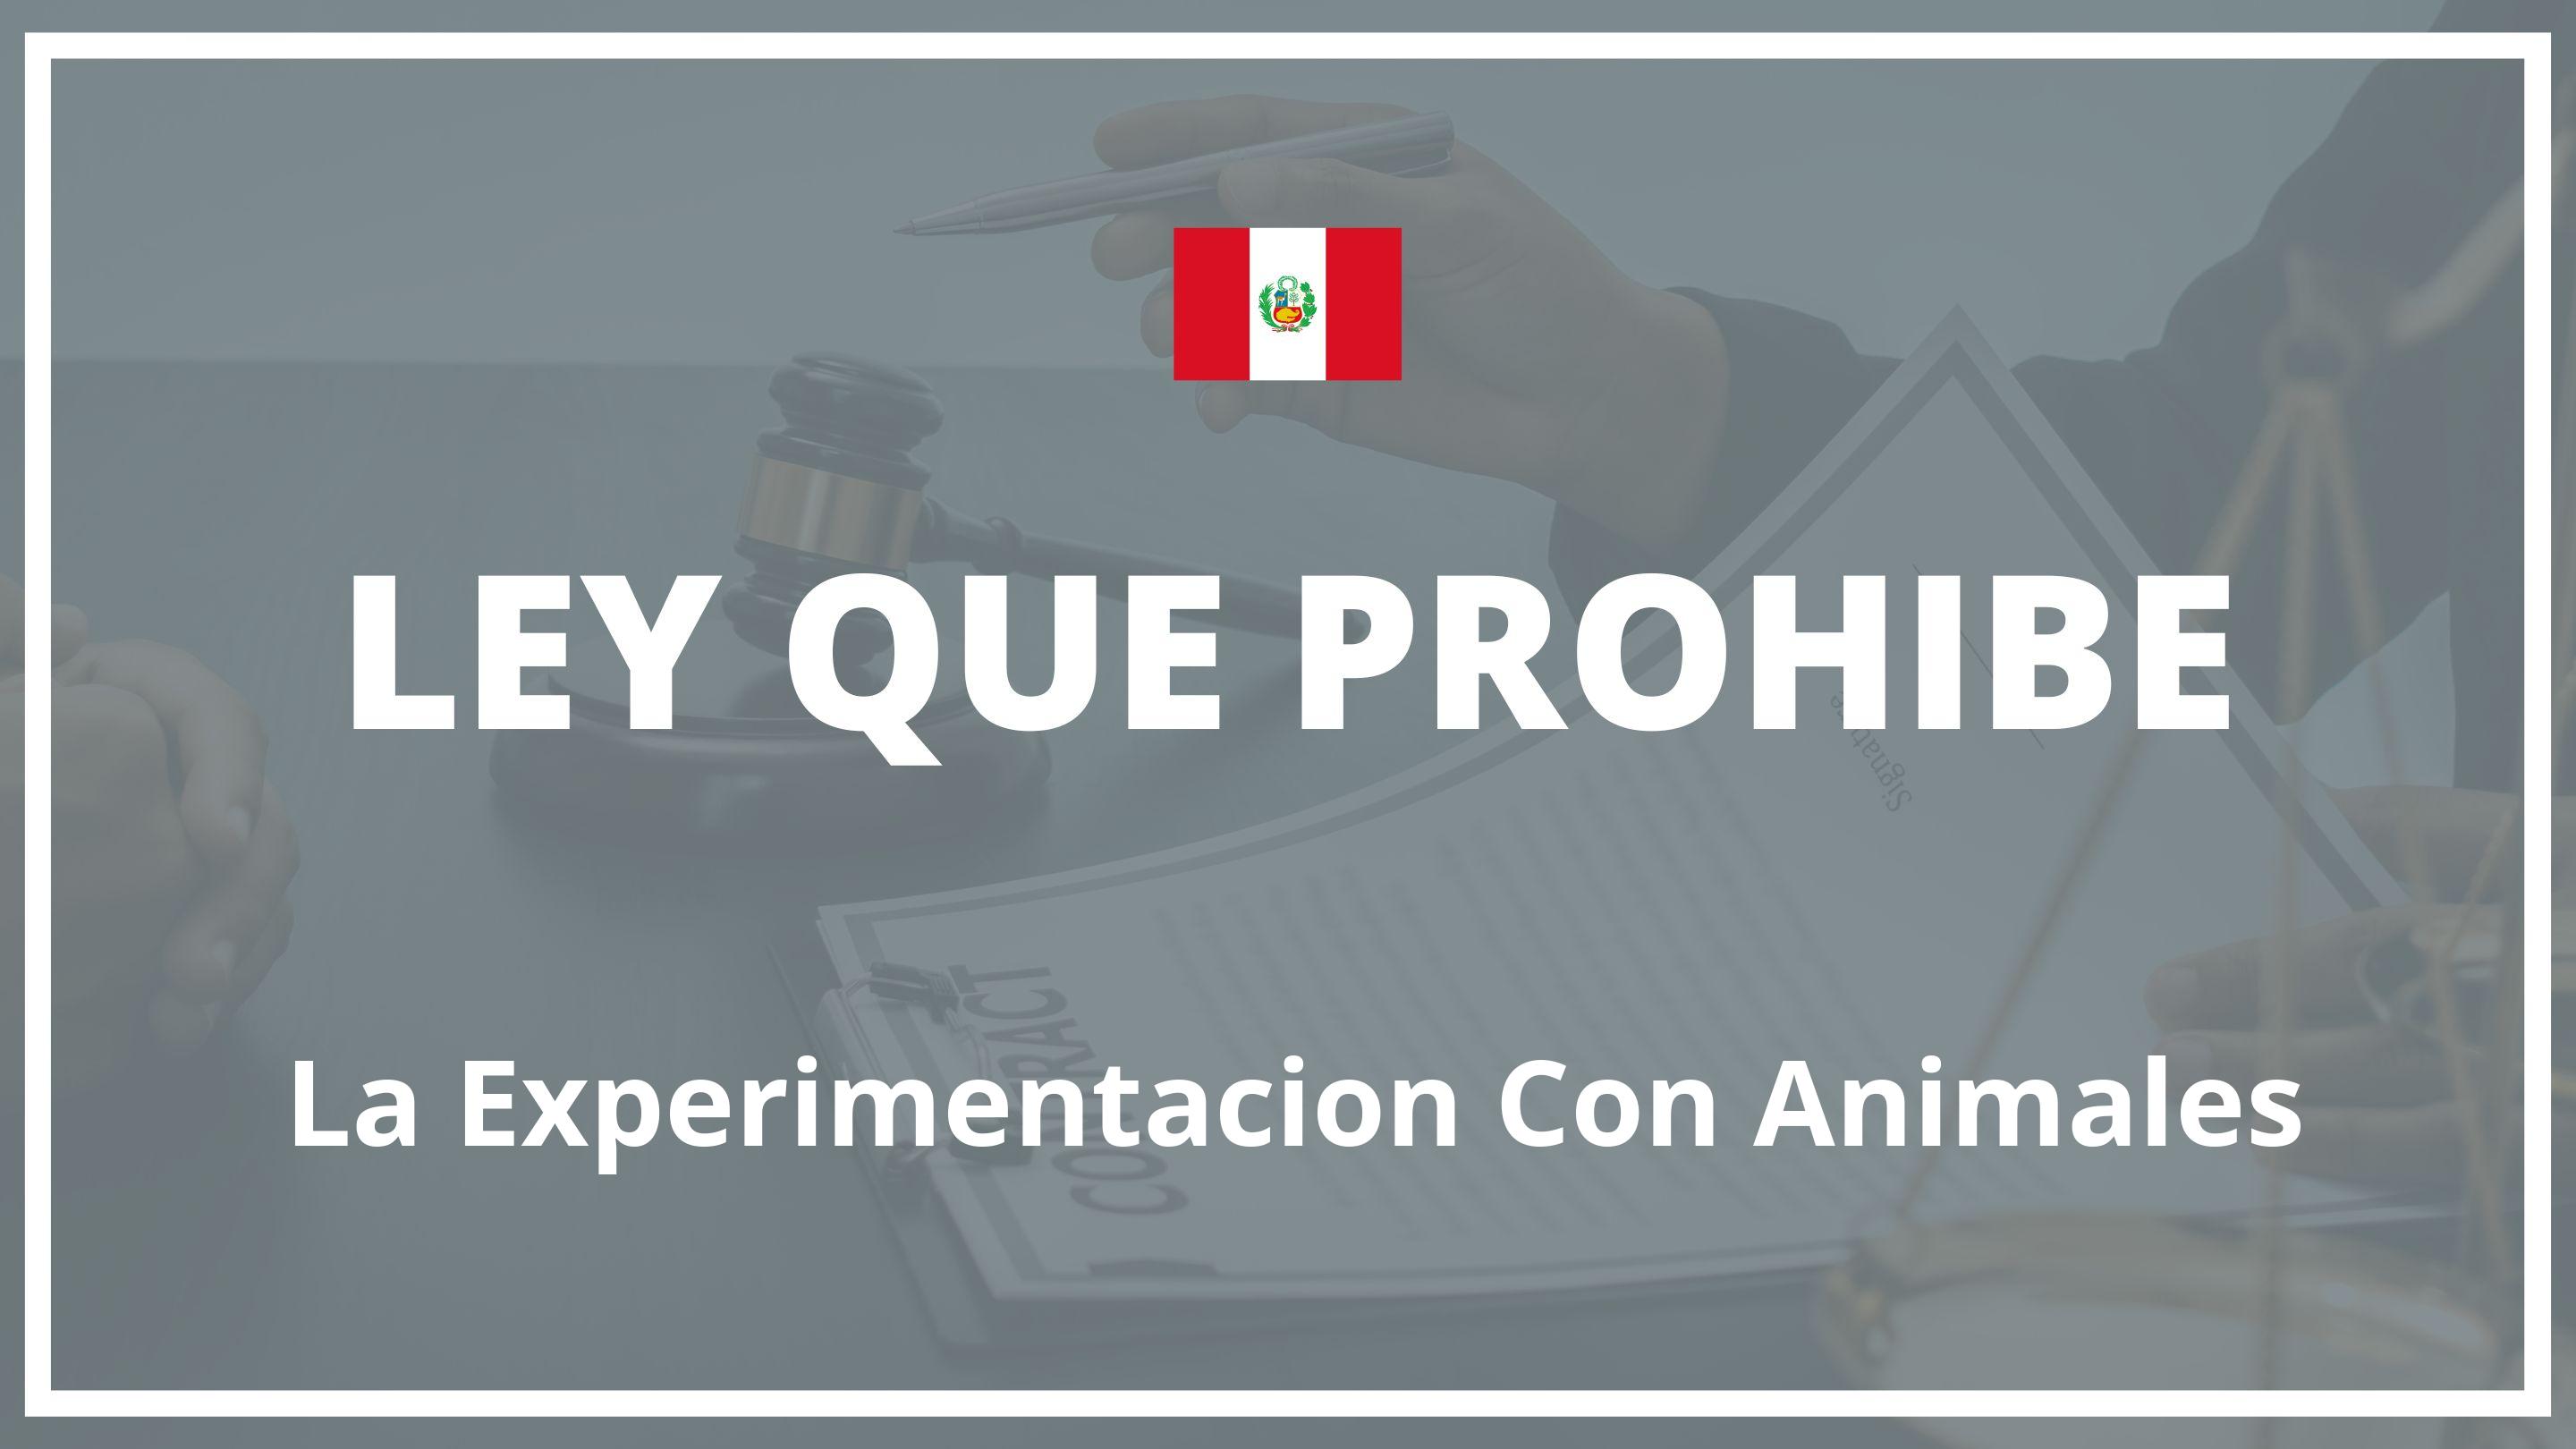 Ley que prohibe la experimentacion con animales Peru